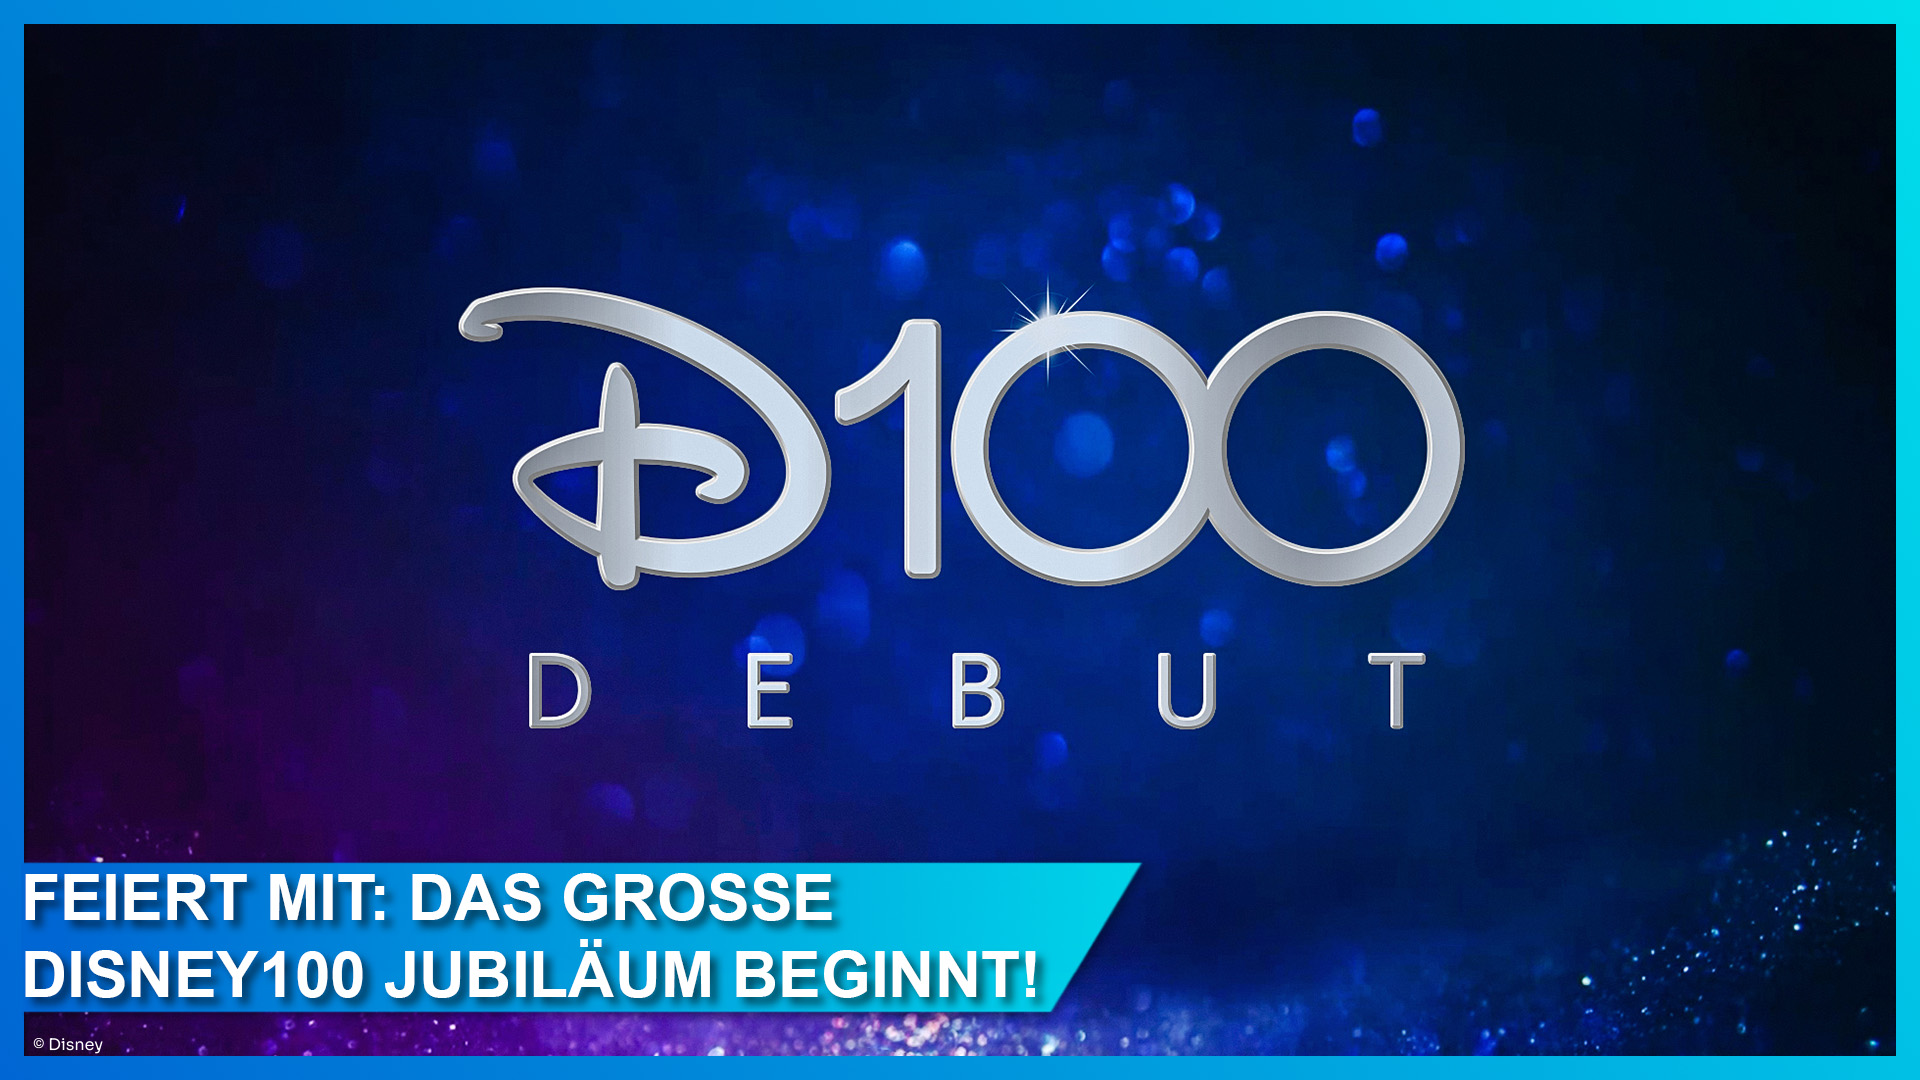 Disney100 Jubiläumsfeier in Deutschland und Europa